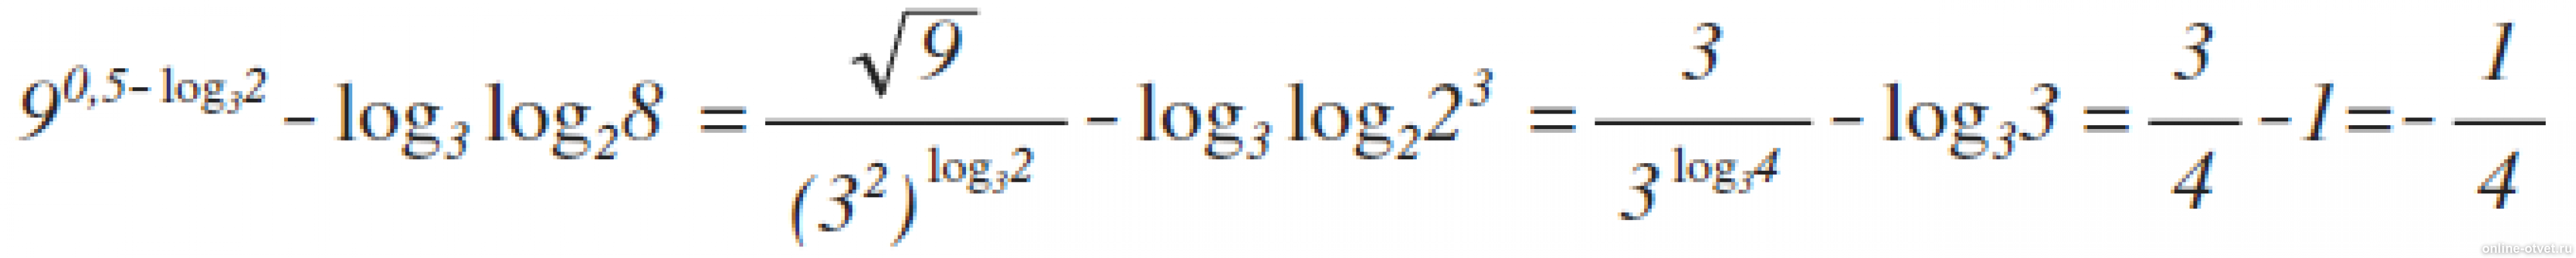 4 2 log 4 3 решение. 9 В степени 0.5 log 3 2 log3. Лог x по основанию корень из 3. Log 25 по основанию корень из 2. Log2 log2 корень 4 степени из 2.